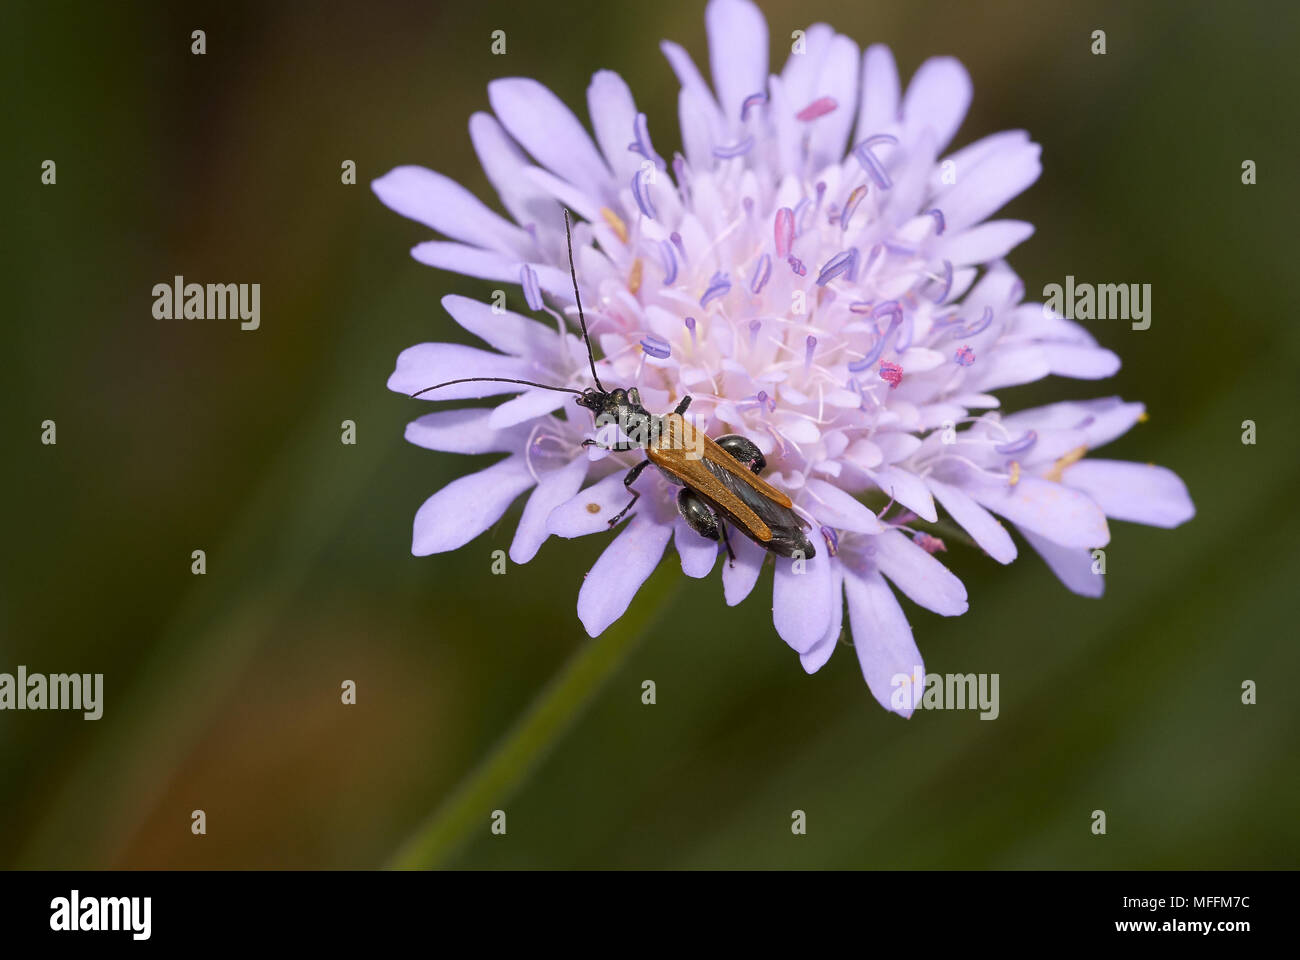 Flor Oedemeridae Escarabajo (Beetle) una alimentación polen Corfu Foto de stock